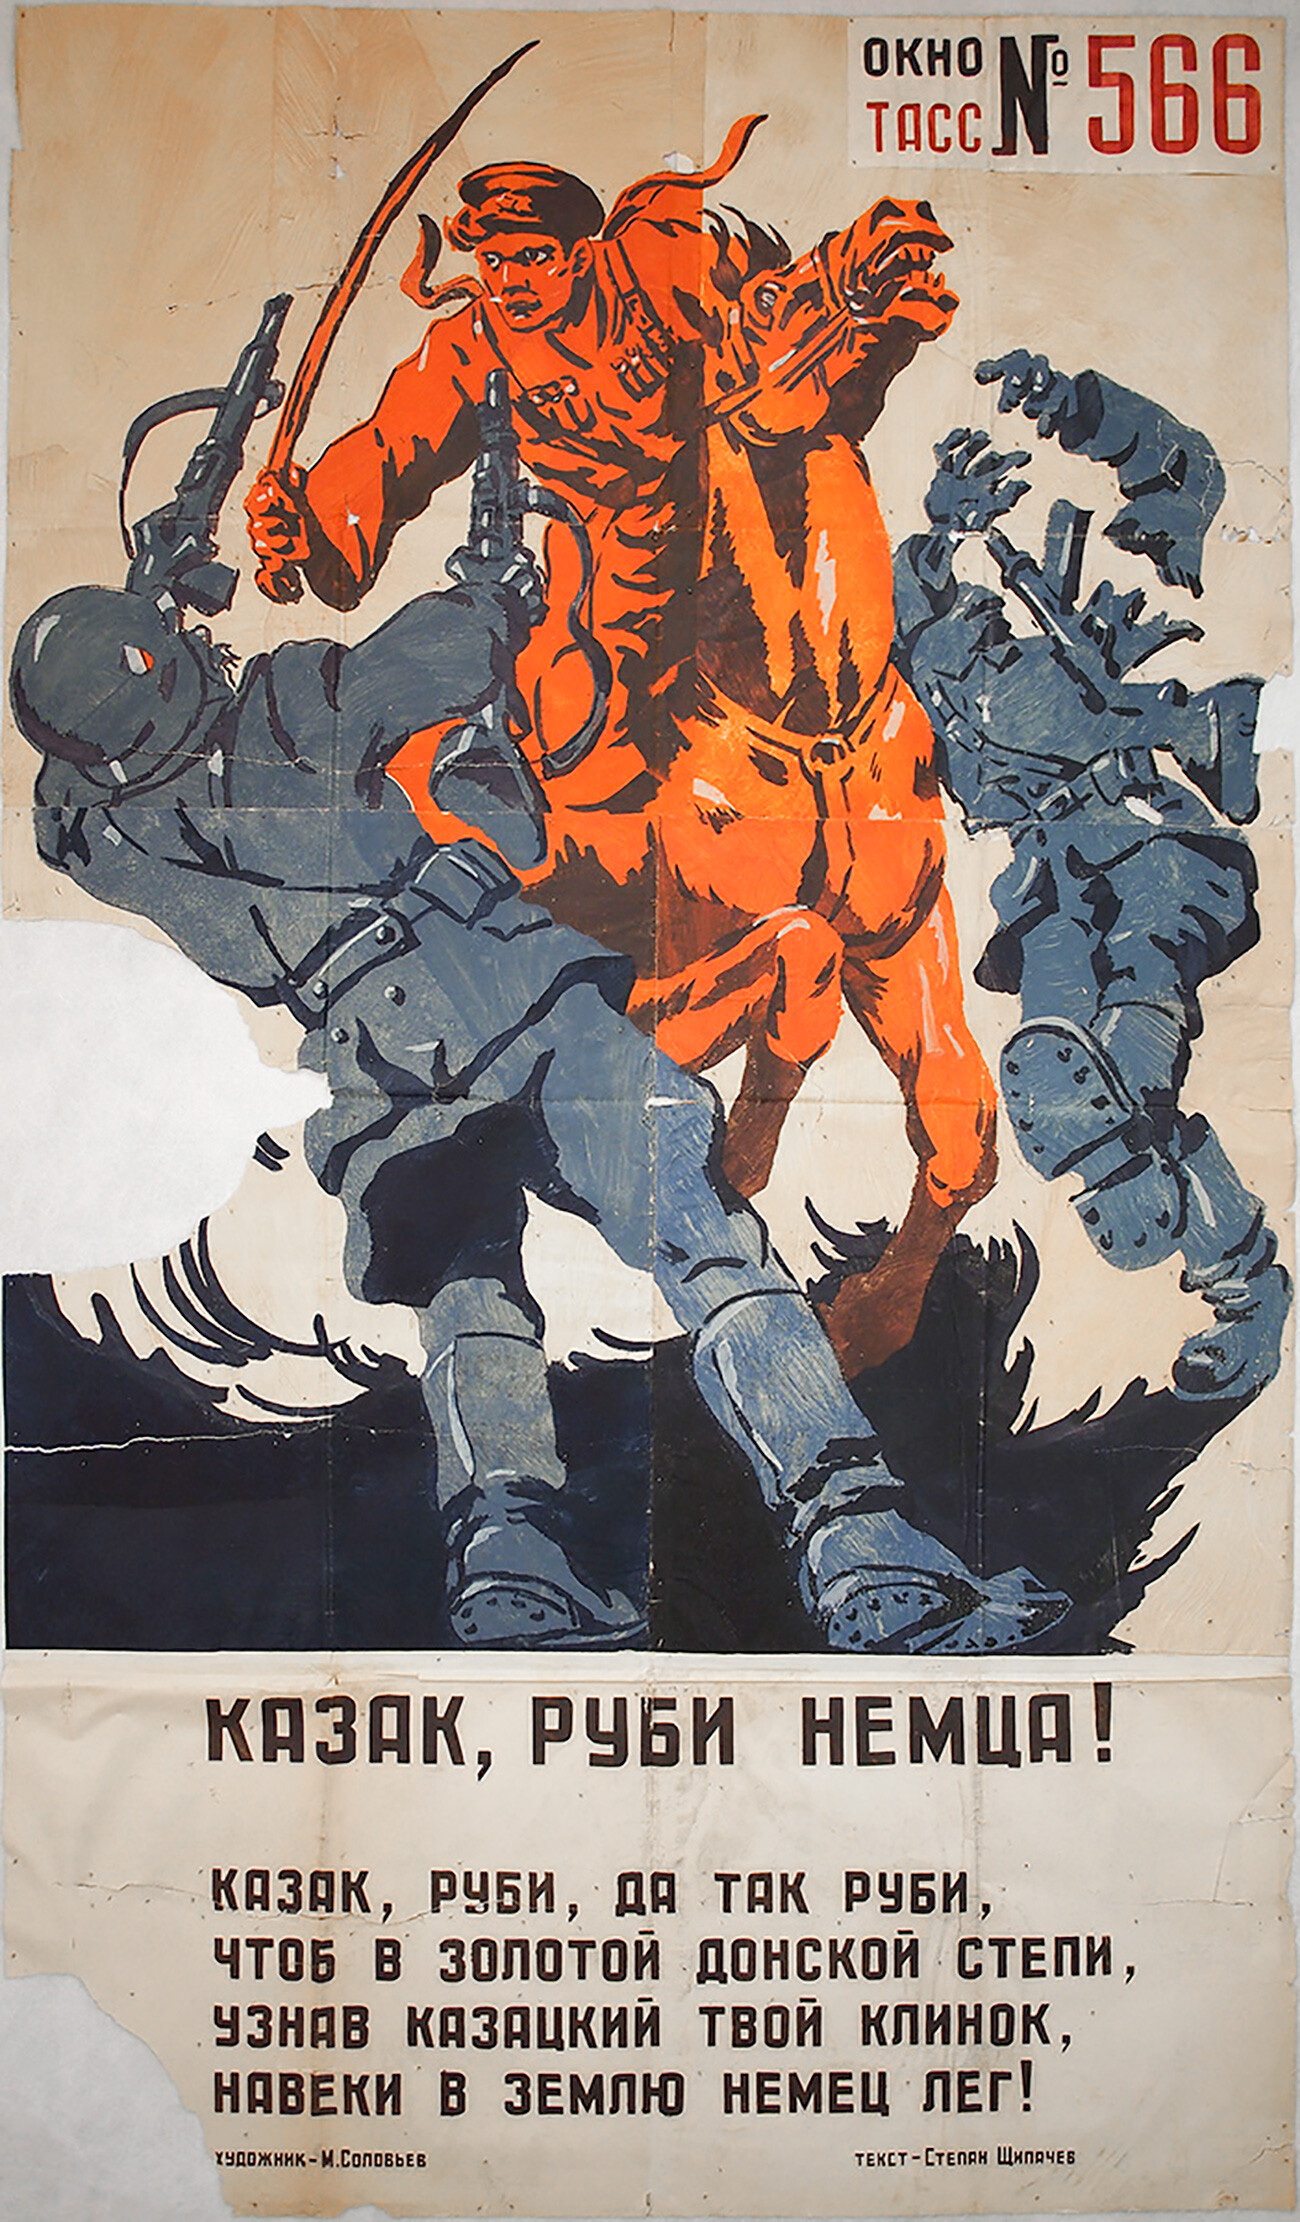 Окна тасс плакаты. Окна ТАСС 1941-1945 плакаты. Советские военные плакаты. Окна ТАСС плакаты в Великой Отечественной войне. Советские агитационные военные плакаты.